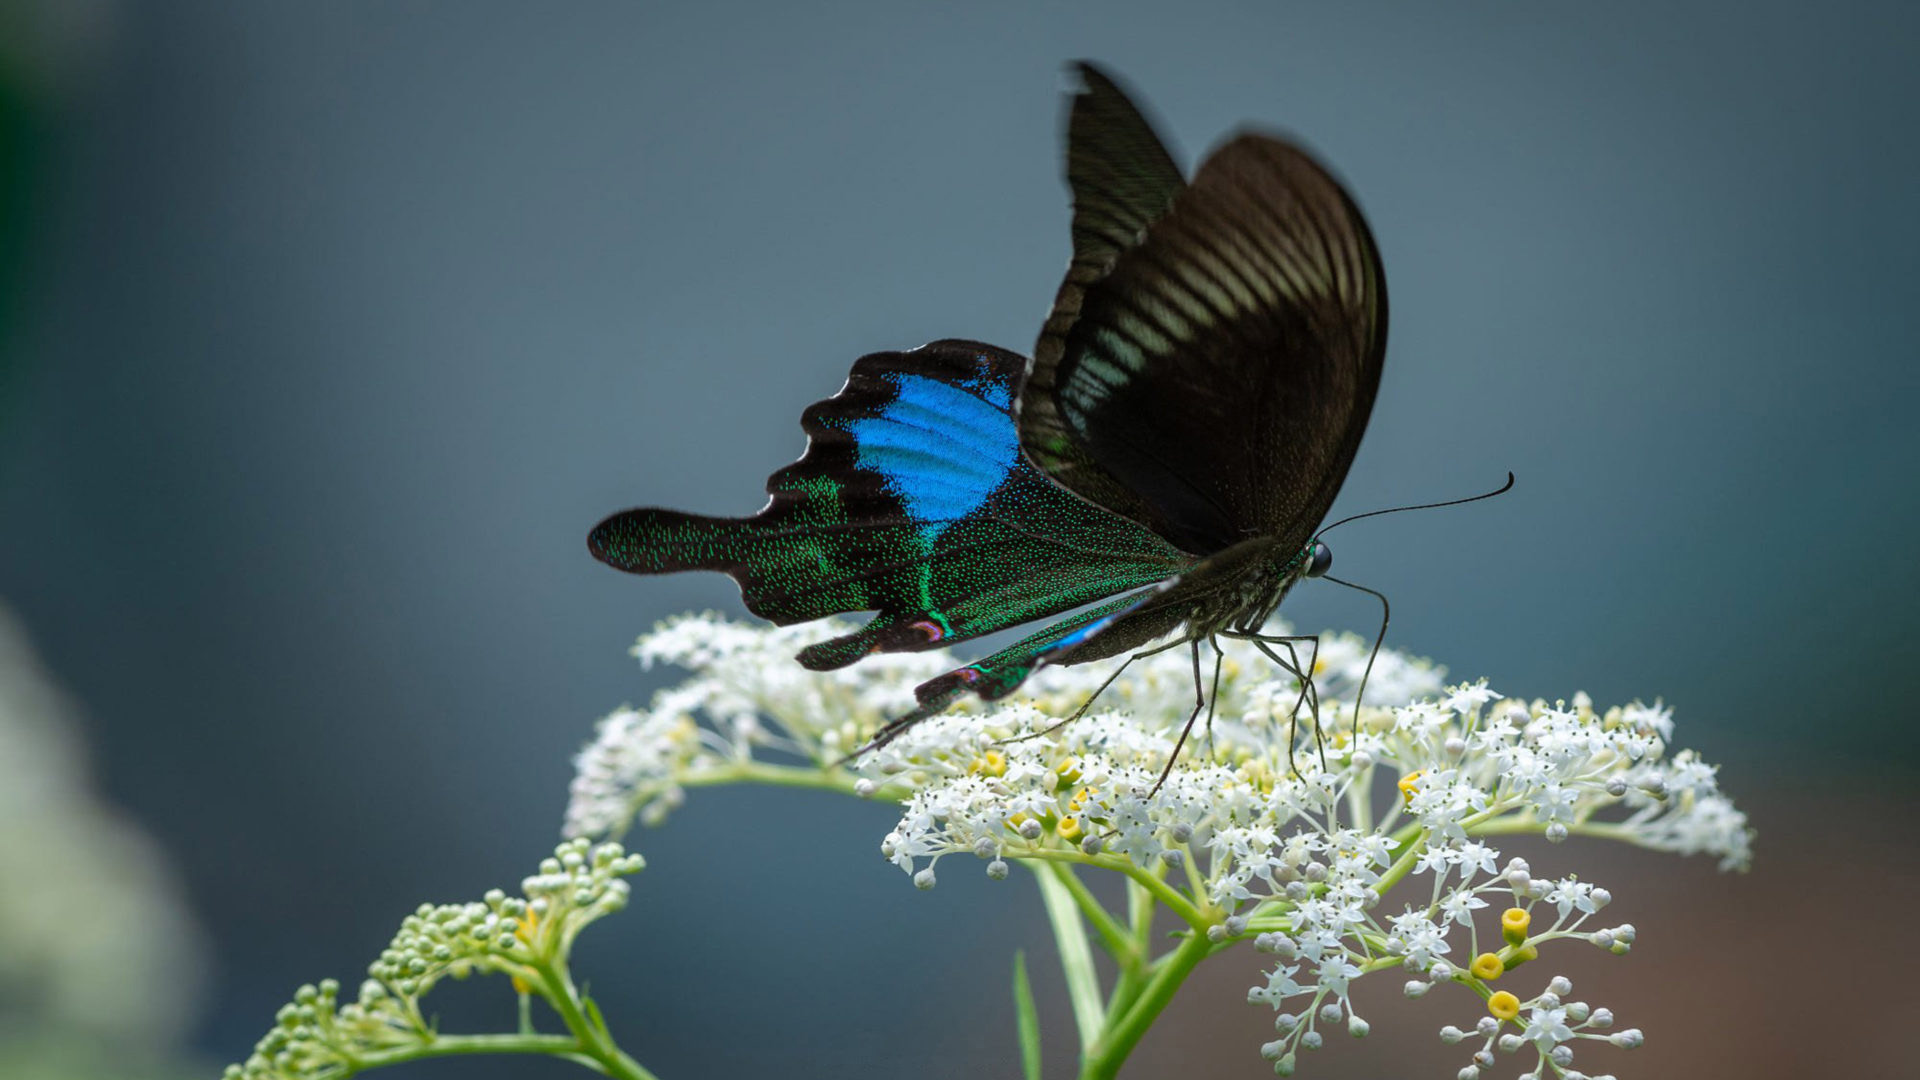 Blue Black Butterfly On White Flowers Plants In Blur Wallpaper 2K Butterfly